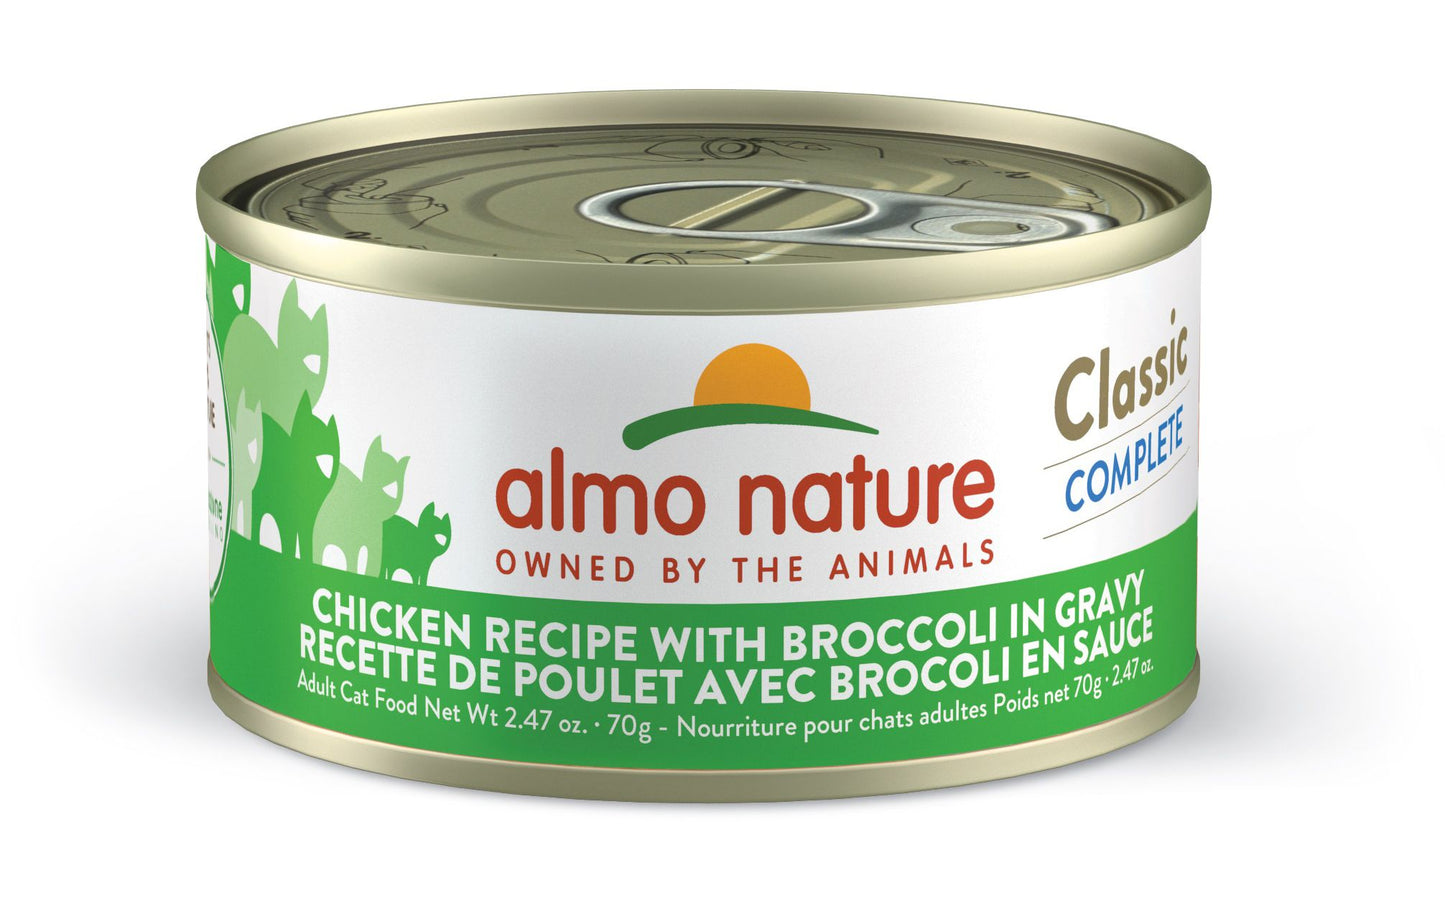 Almo Nature Classic Complete - Chicken Recipe with Broccoli in Gravy, 2.47oz